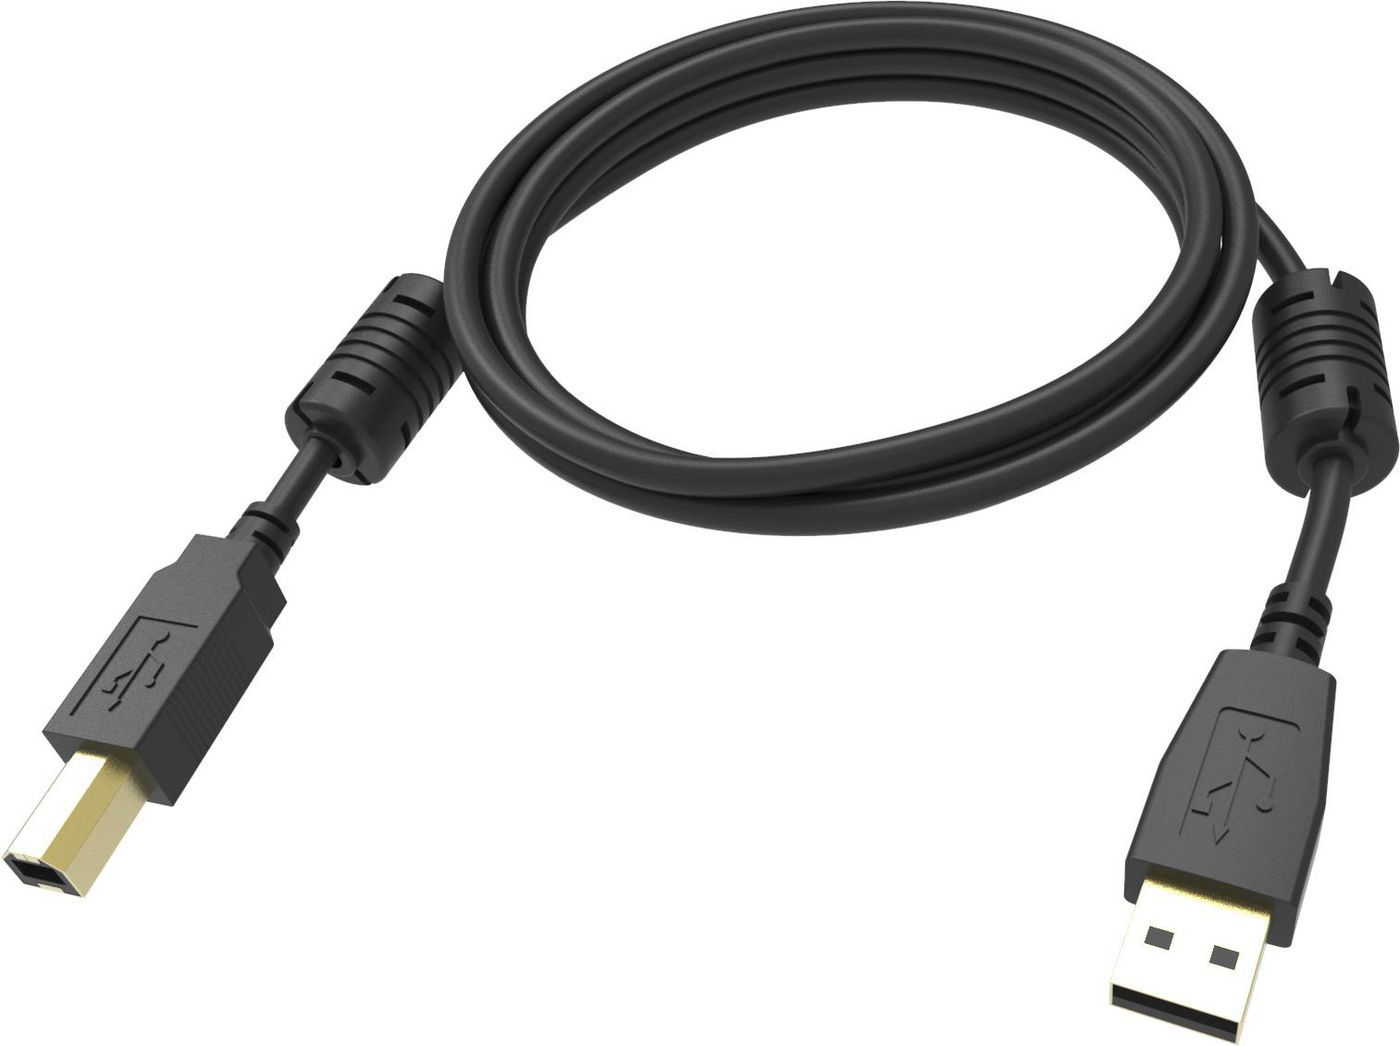 VISION Professional installationstaugliches USB 2.0-Kabel  30 JAHRE GARANTIE  Vergoldete Anschlüsse